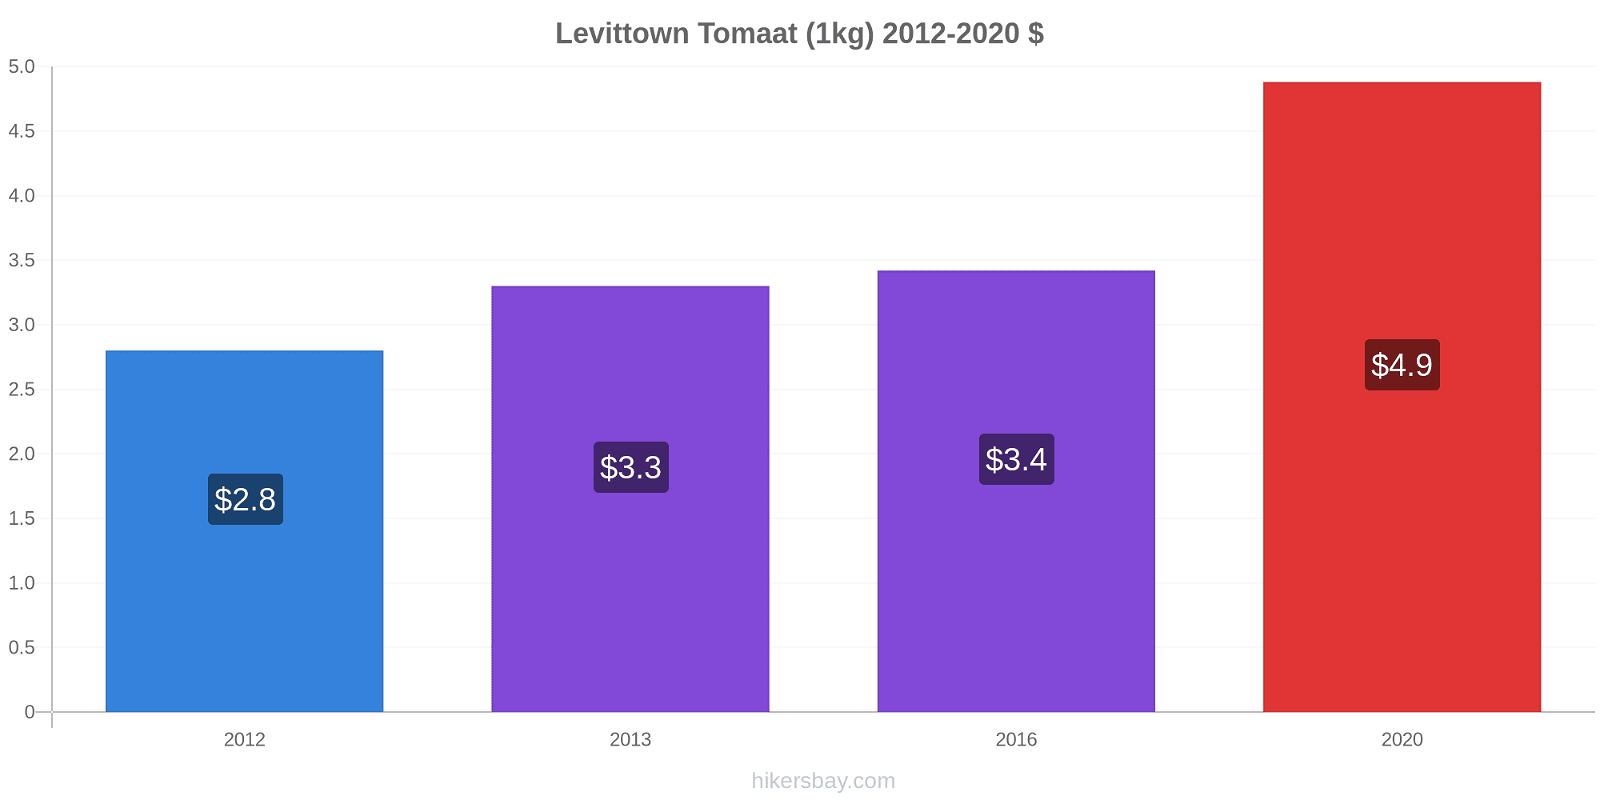 Levittown prijswijzigingen Tomaat (1kg) hikersbay.com